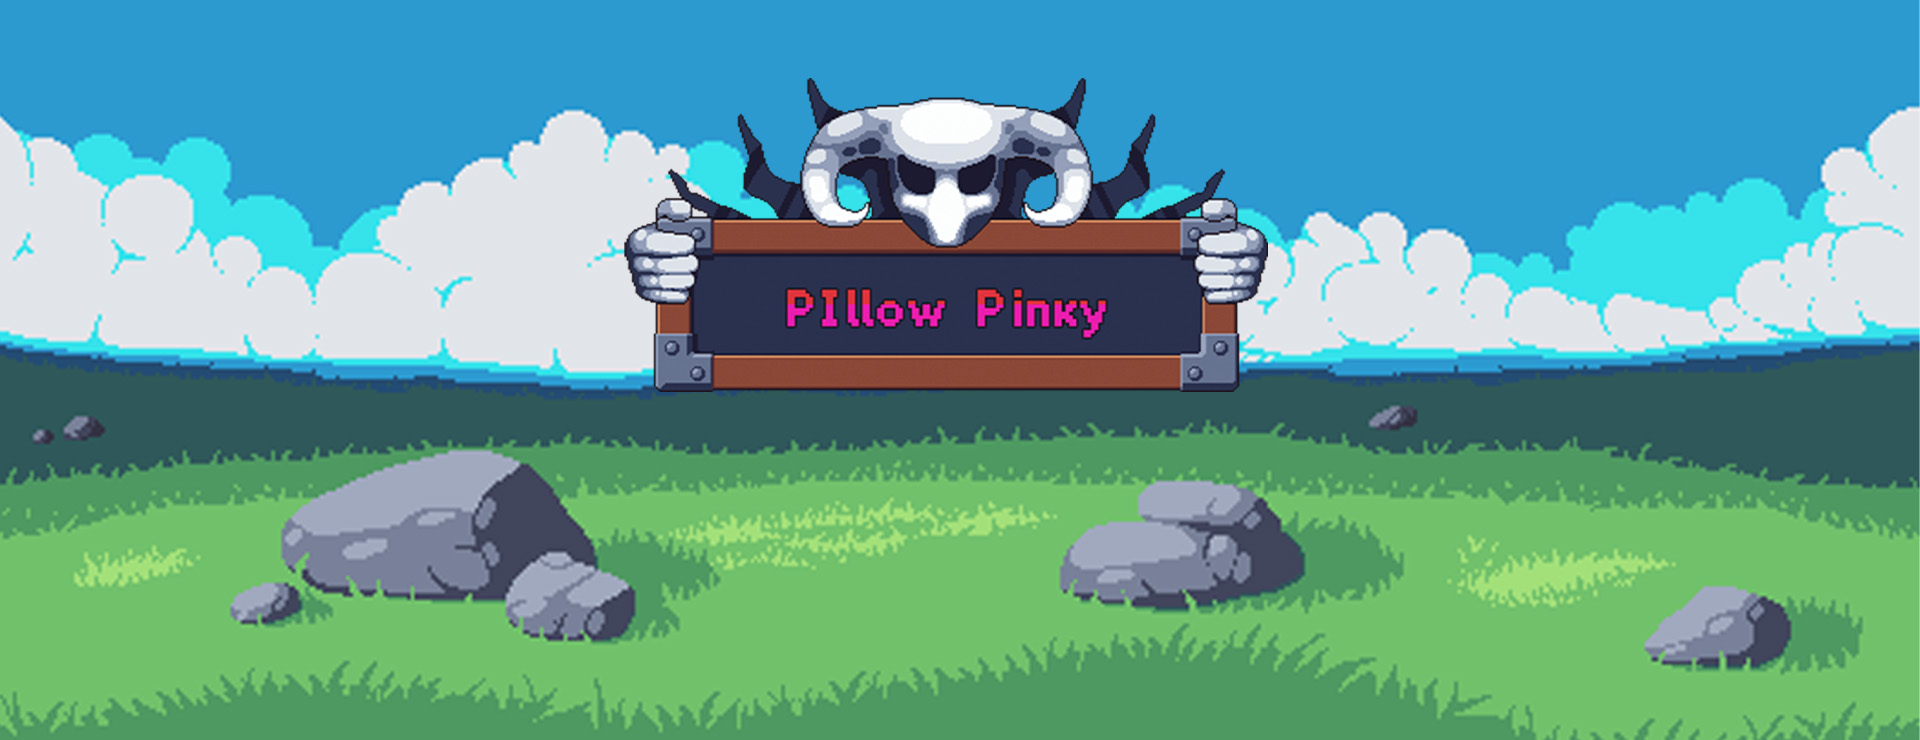 Pillow Pinky - Plateforme Jeu